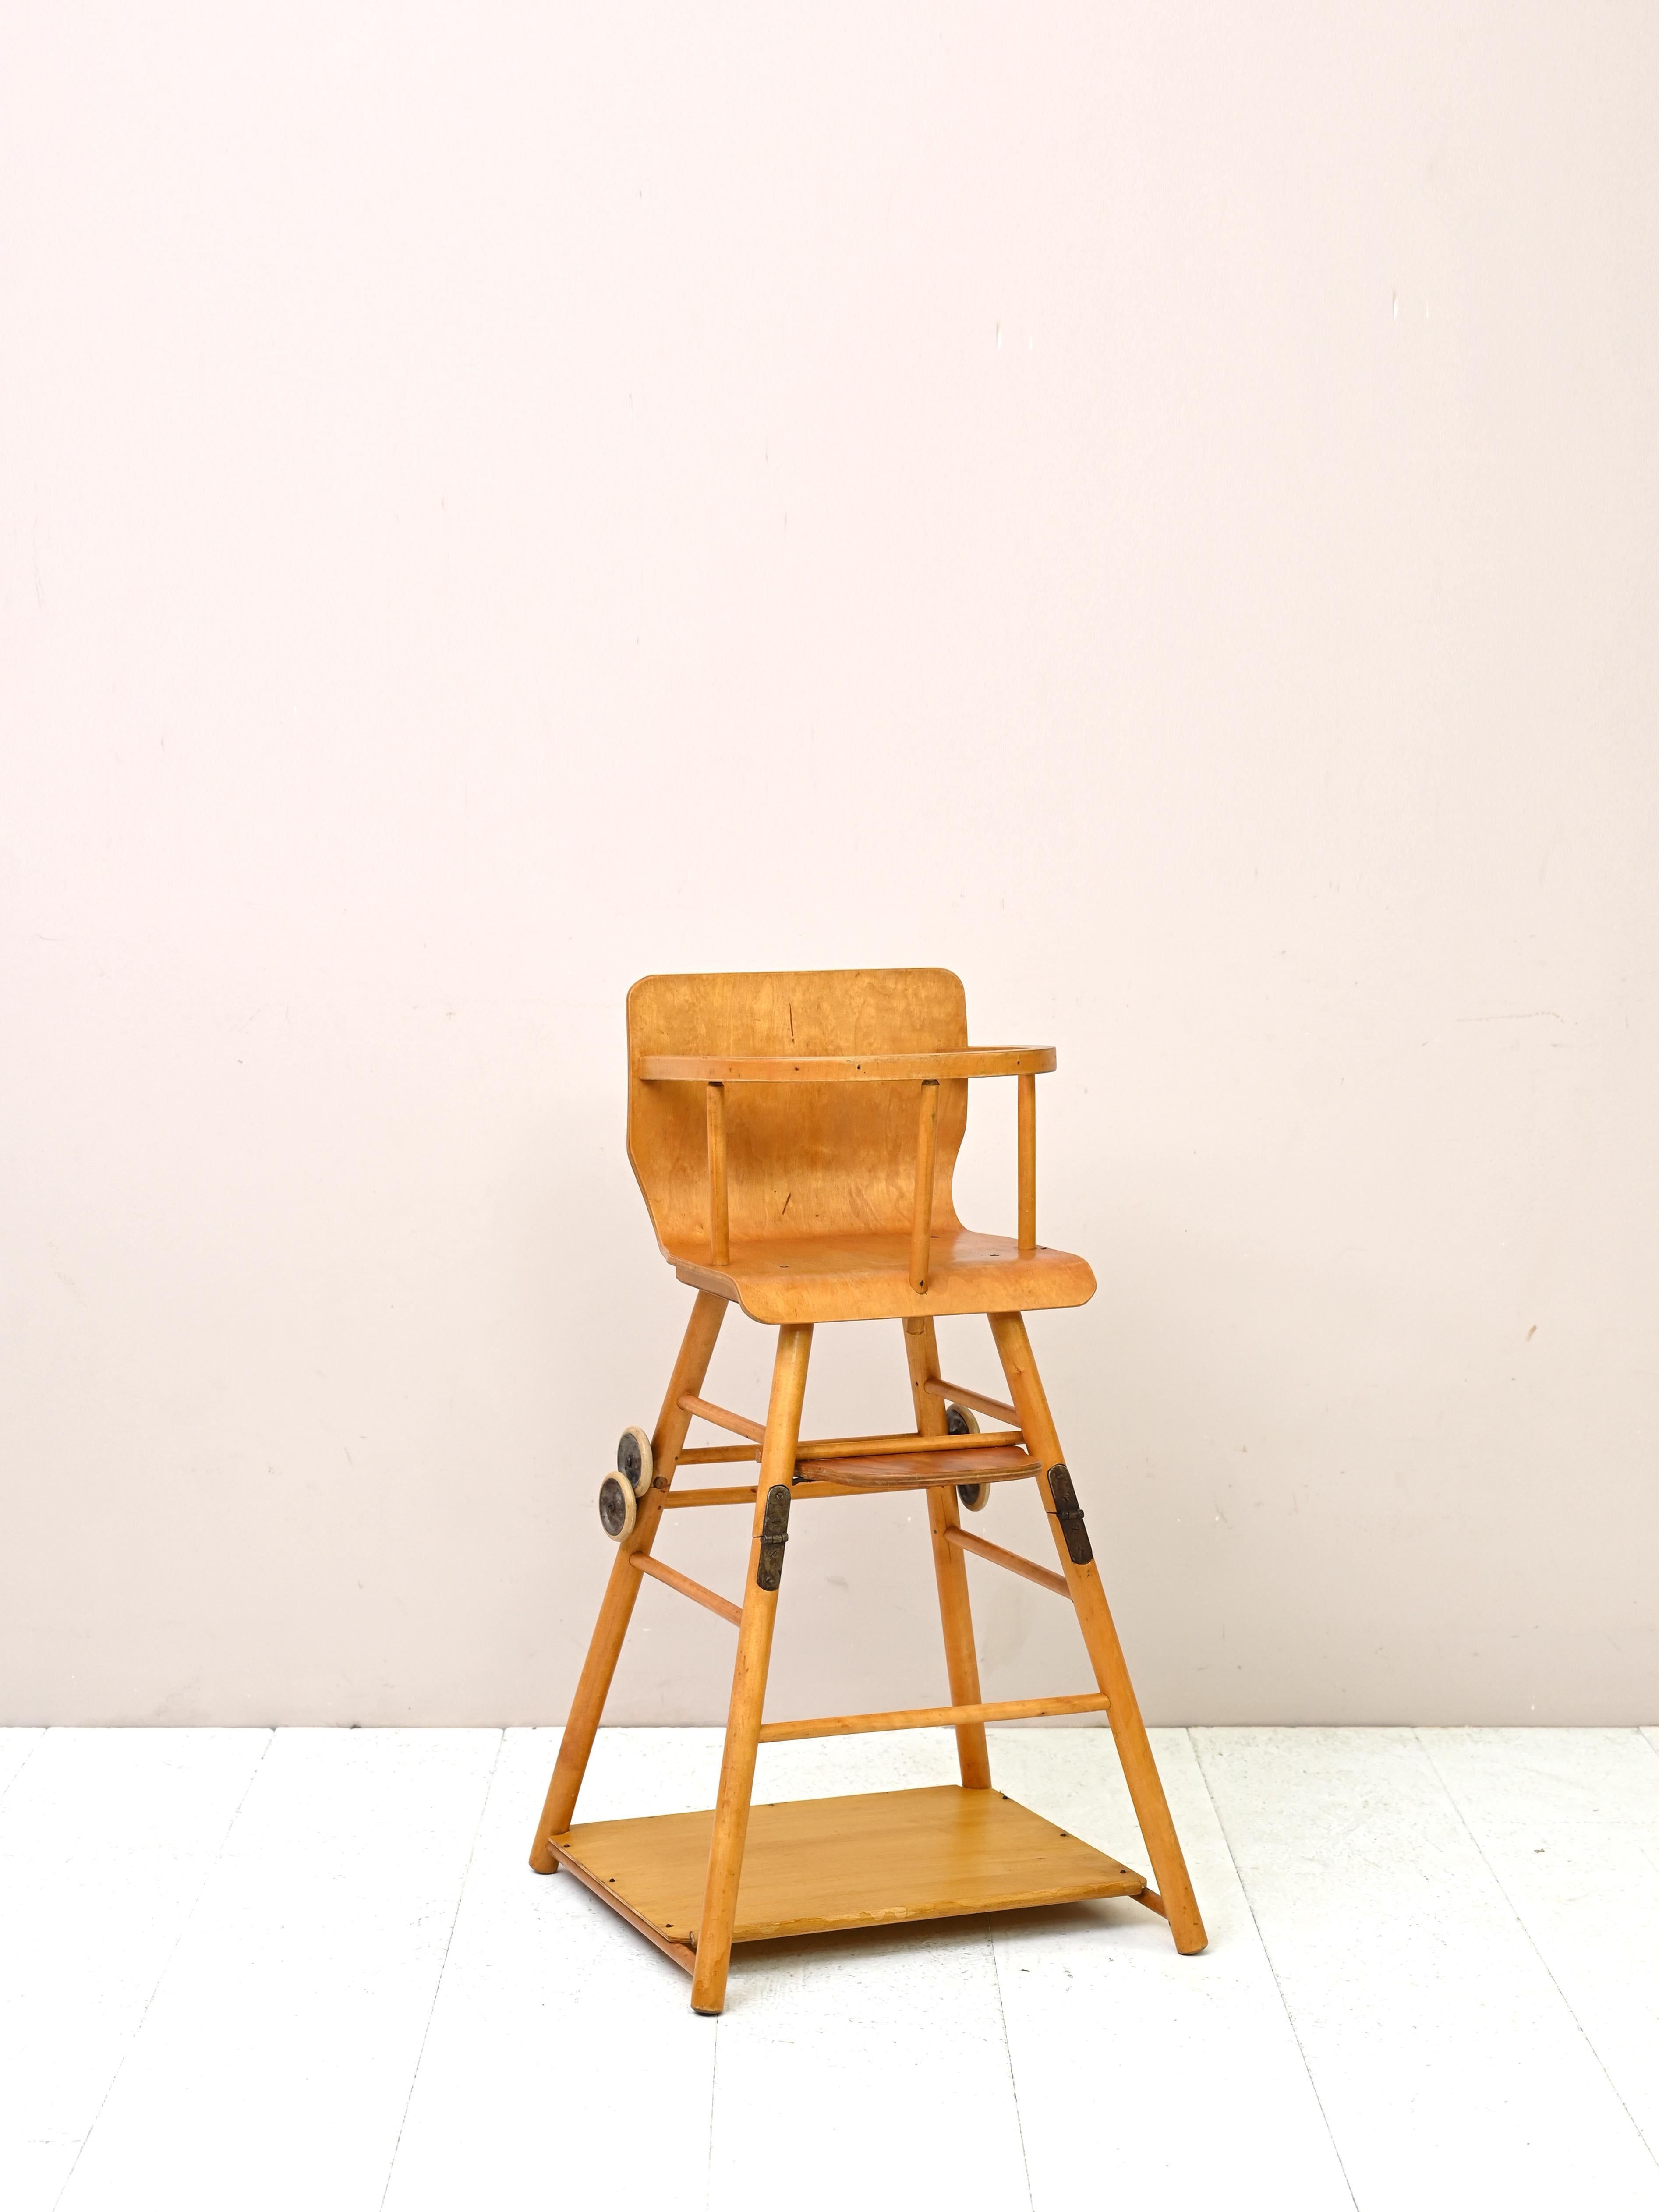 Chaise et trotteur vintage original pour bébé
Une pièce antique moderne particulière en très bon état avec la double fonction de chaise haute et de déambulateur.

Bon état. Il a été restauré avec des produits naturels. Il peut montrer quelques